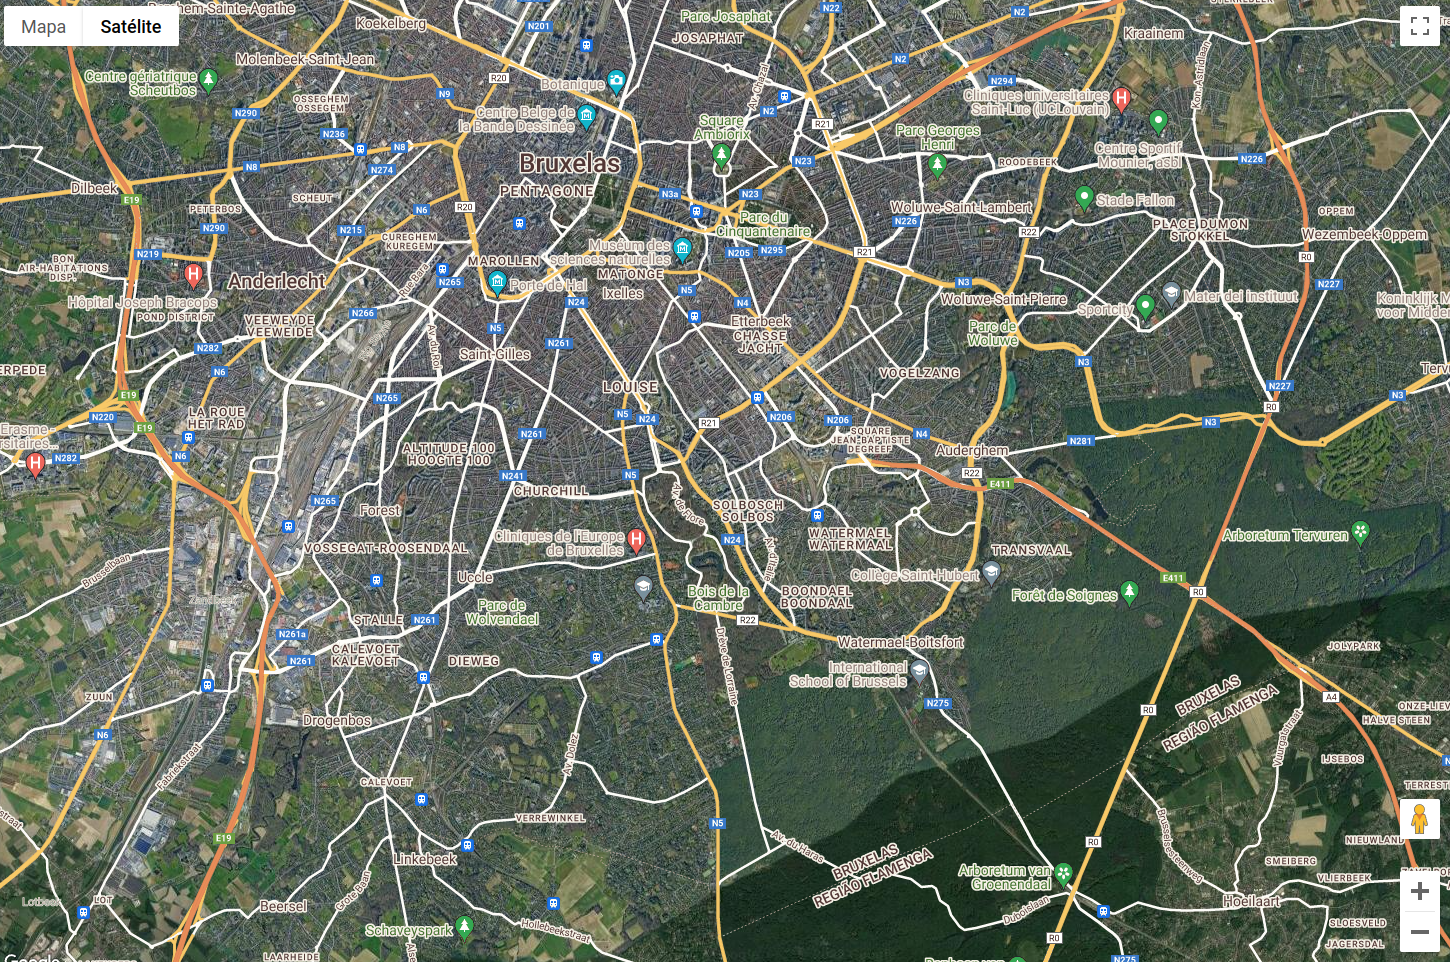 Imagem do Google Maps no modo satélite/híbrido funcionando normalmente.